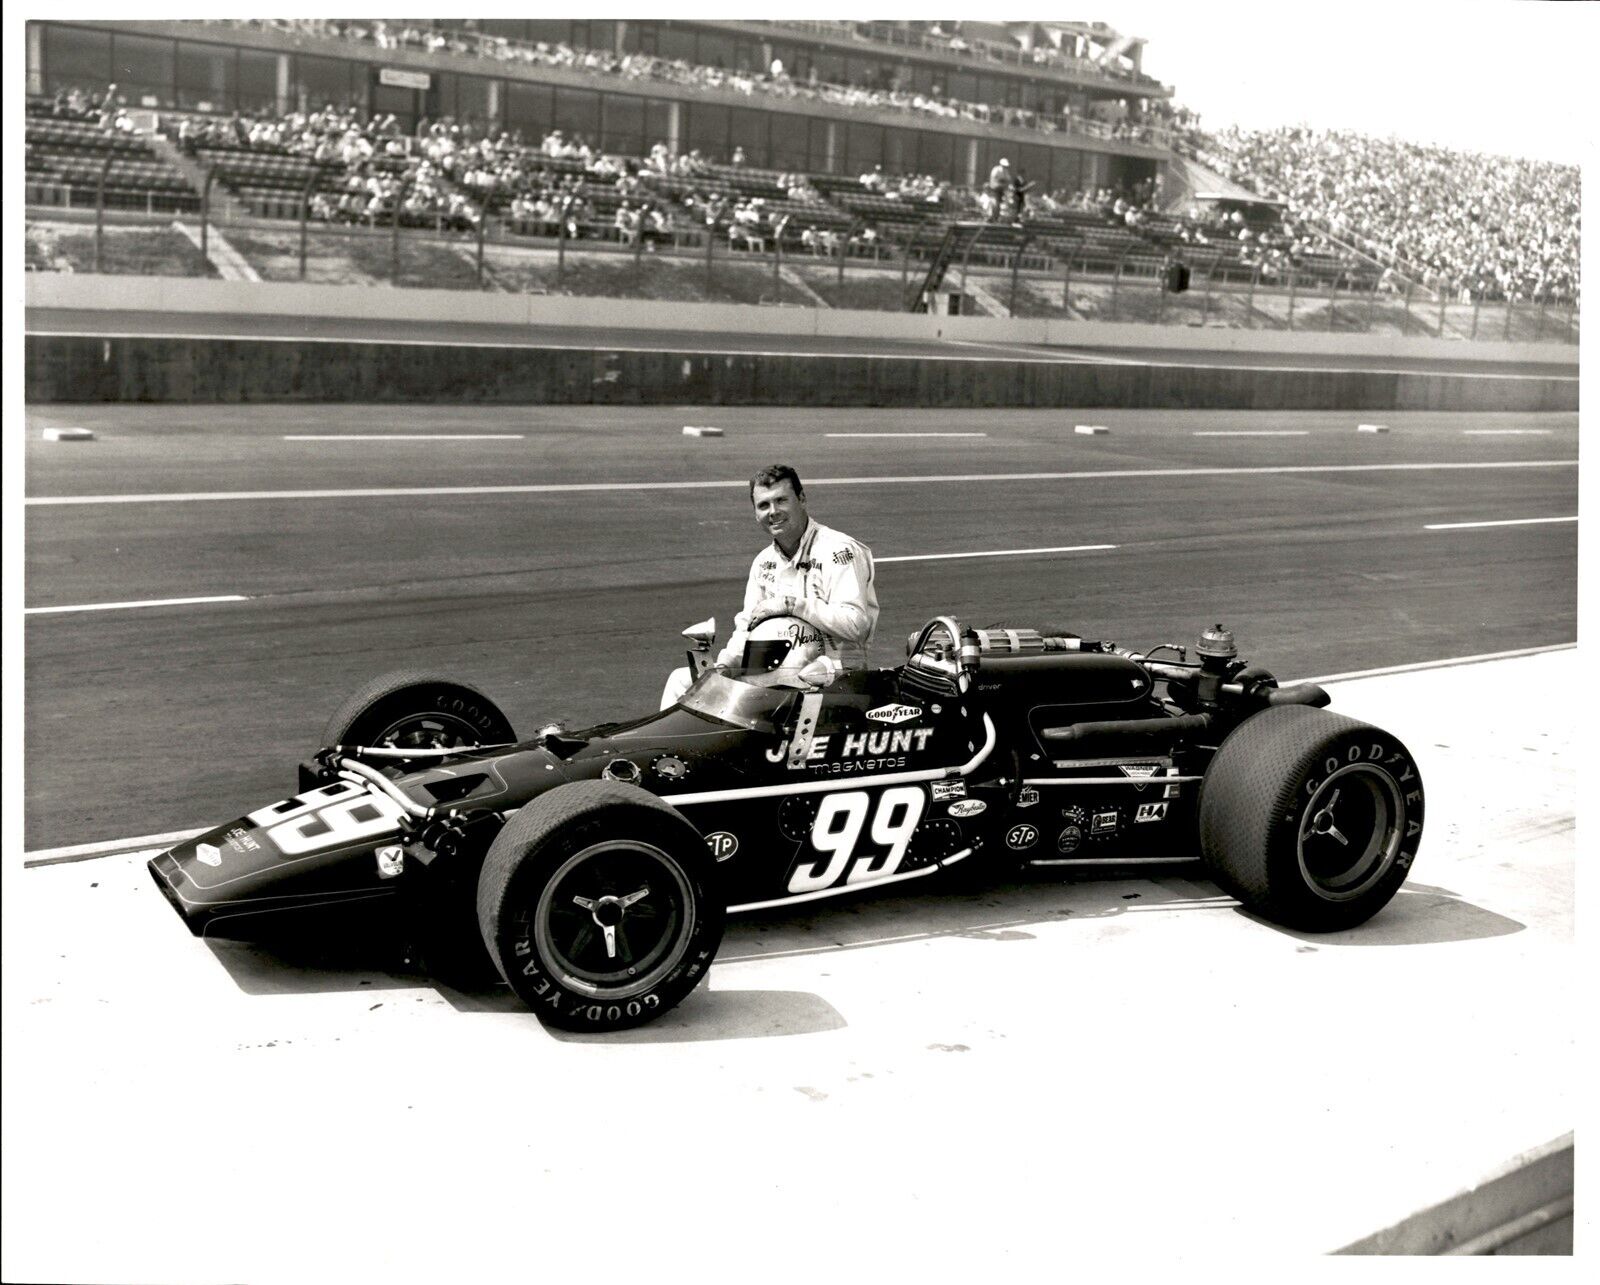 LD318 \'70 Original Darryl Norenberg Photo BOB HARKEY #99 RACE CAR CALIFORNIA 500